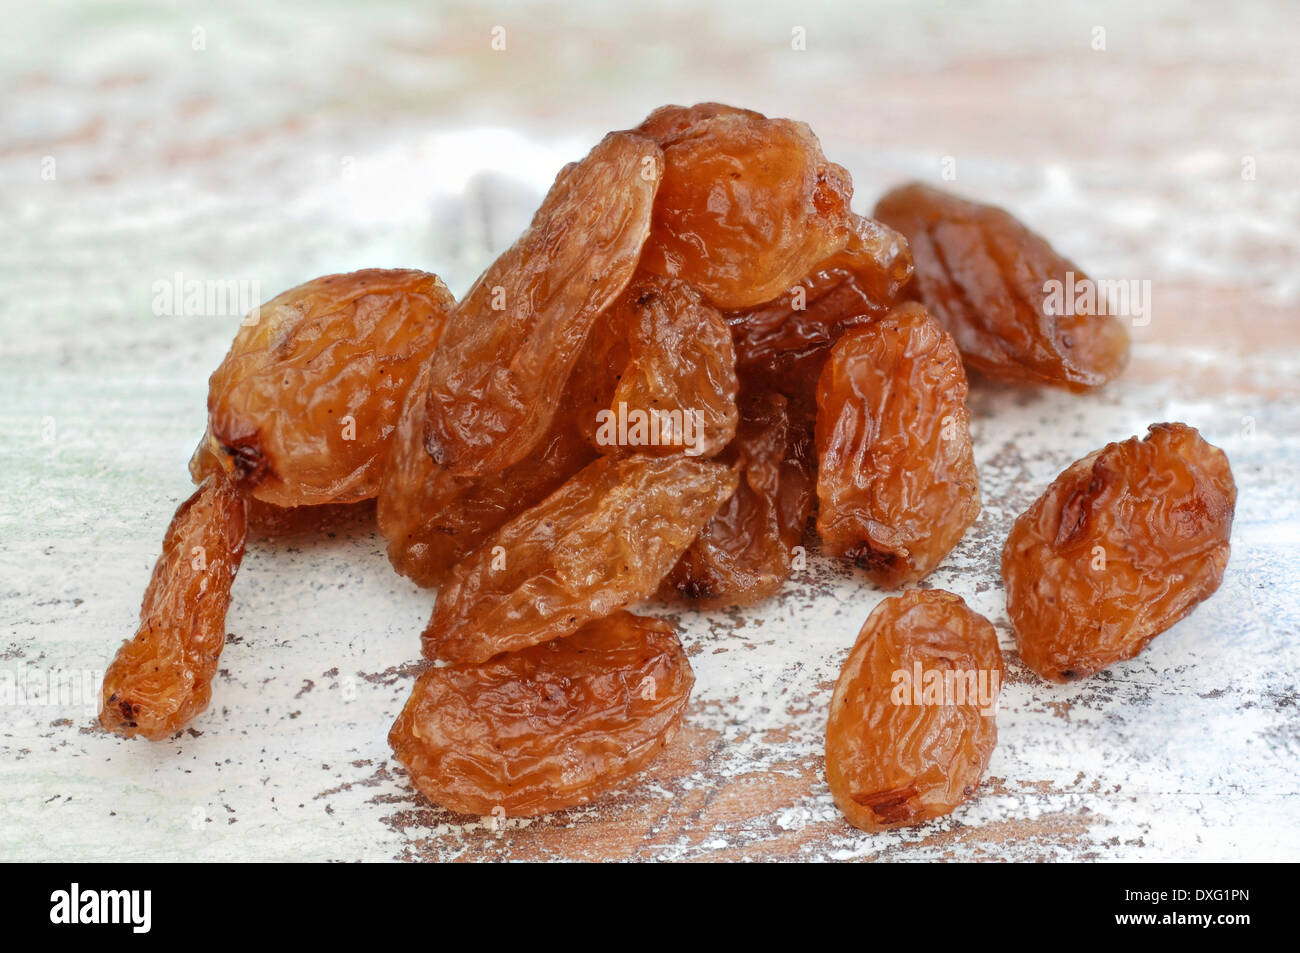 Raisins on an old table Stock Photo